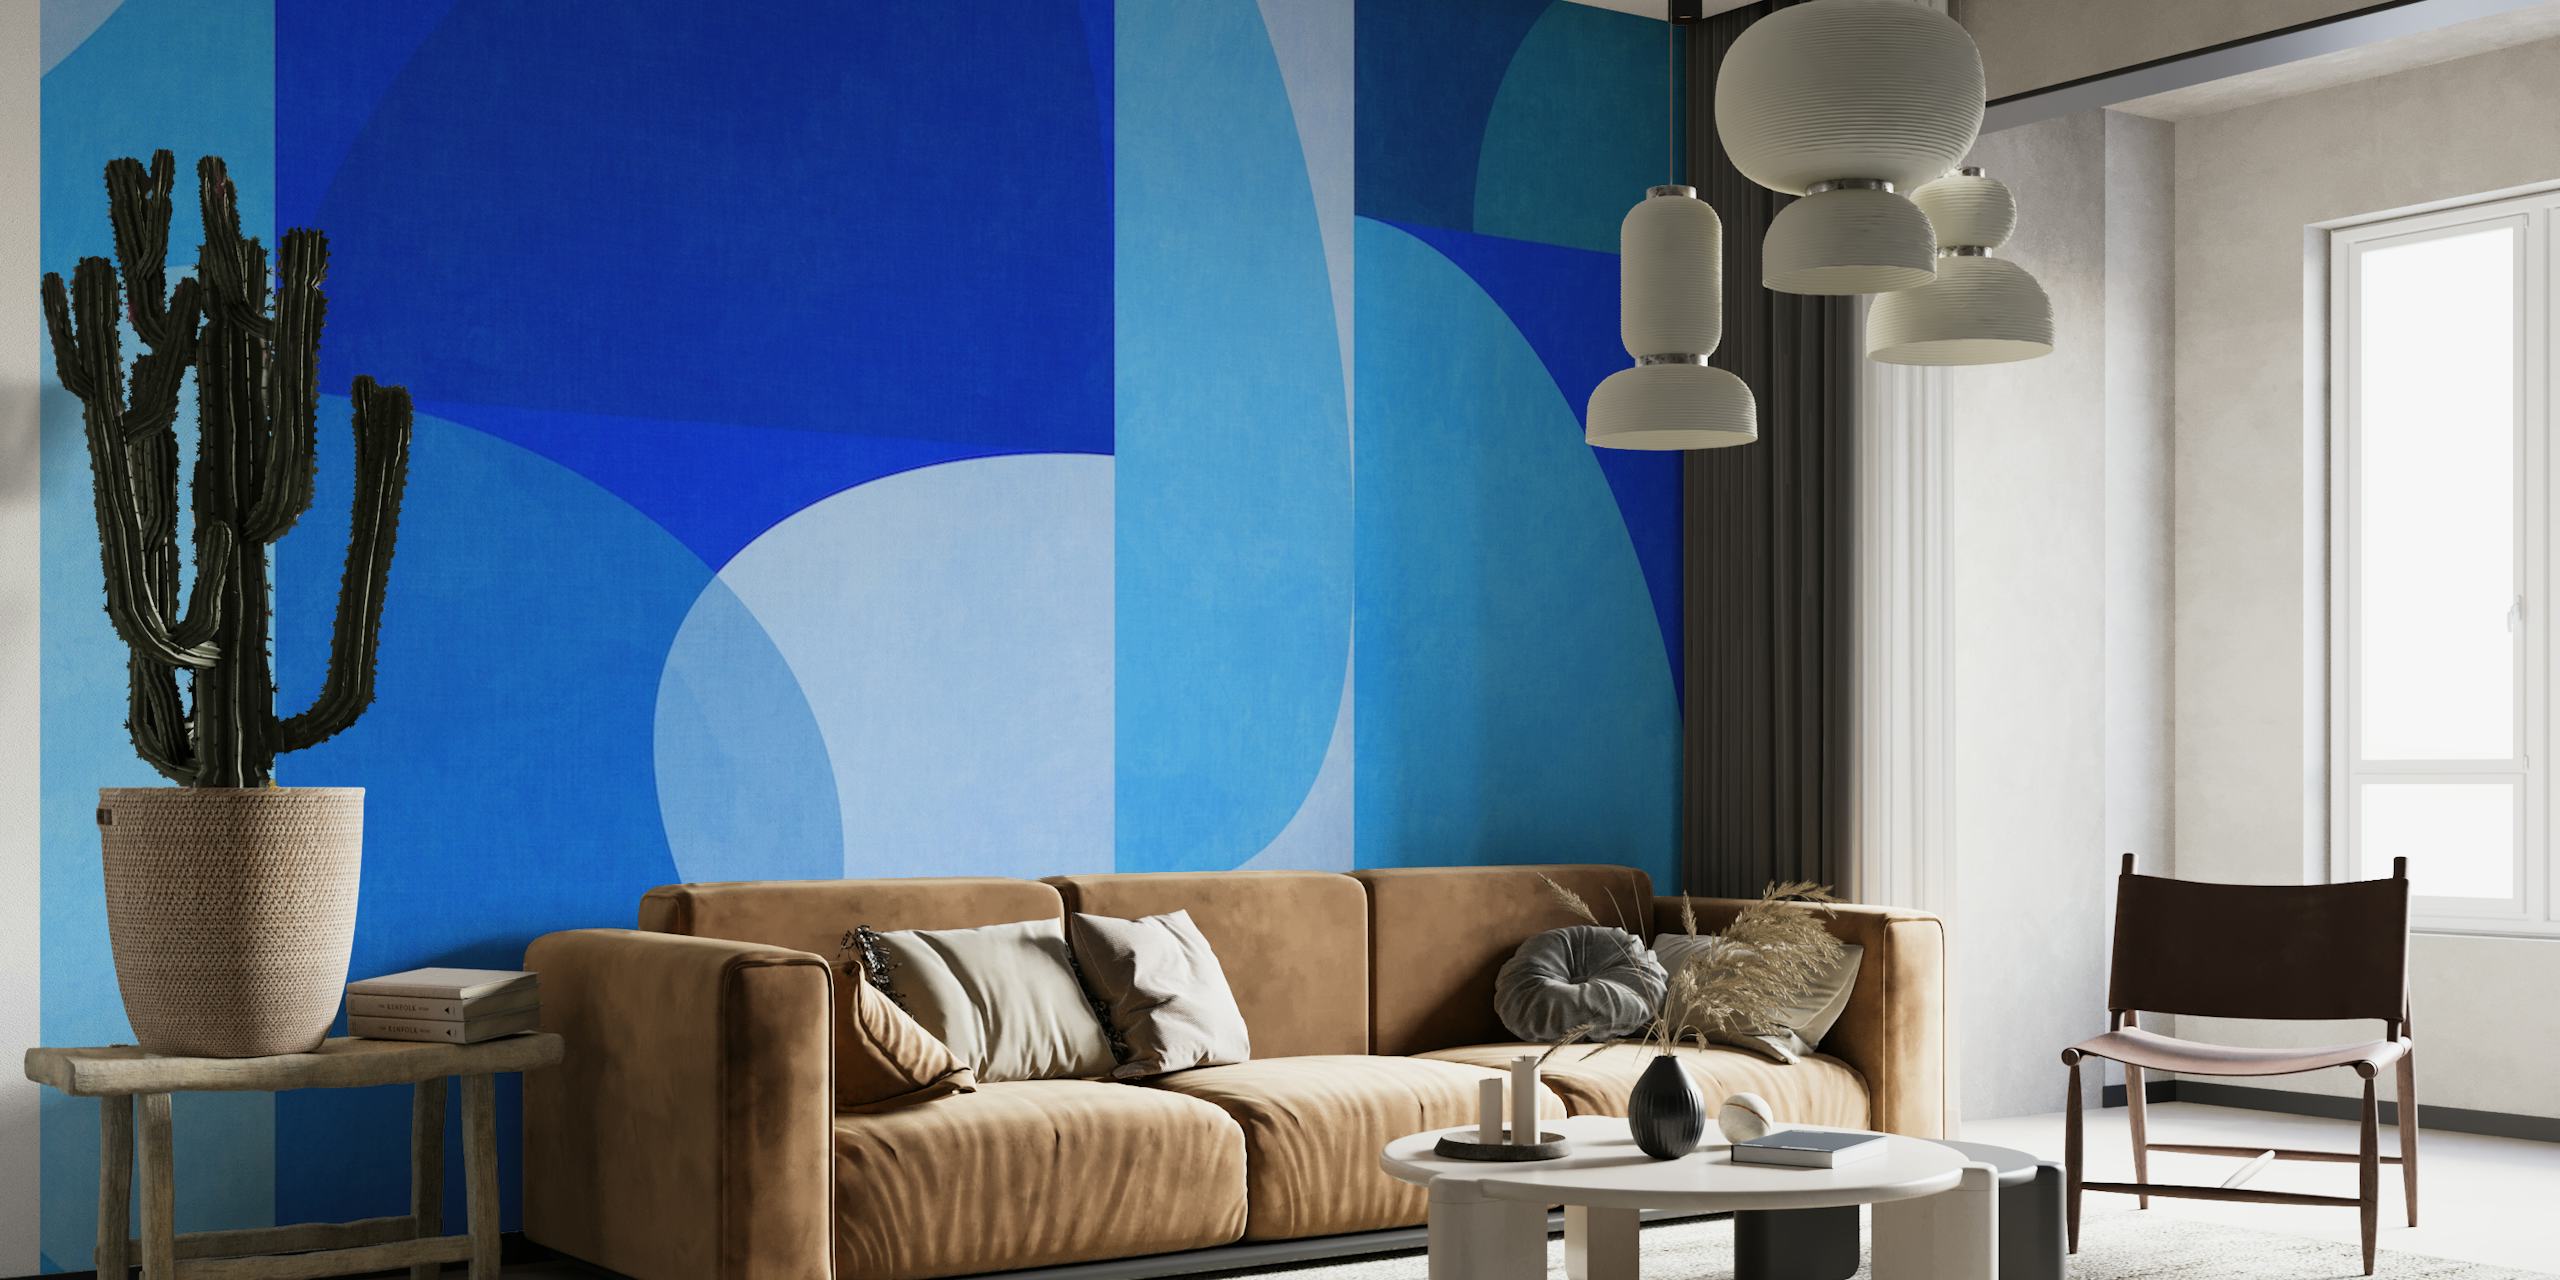 Abstrakt vægmaleri i moderne stil fra midten af århundredet i blå nuancer med geometriske former